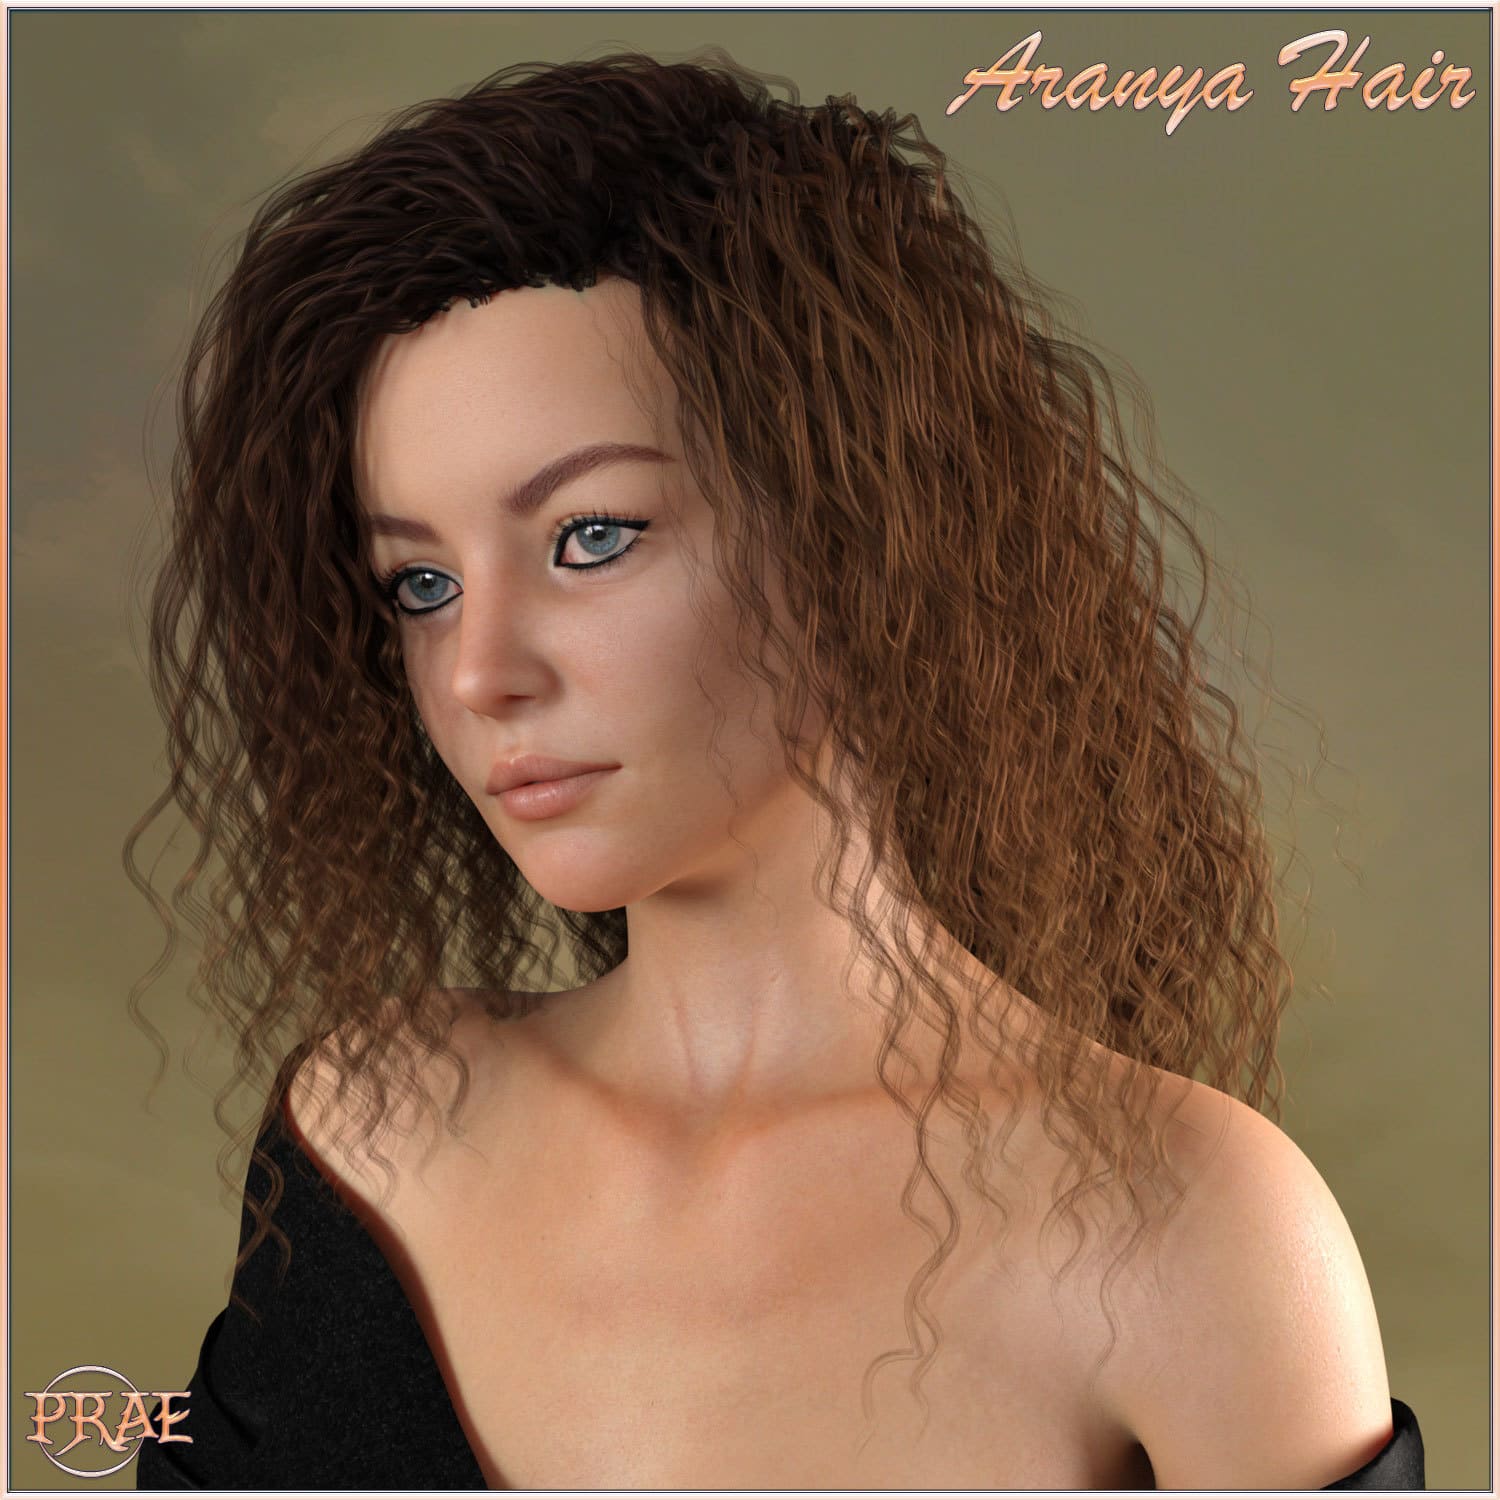 Prae-Aranya Hair For G8 Daz_DAZ3D下载站